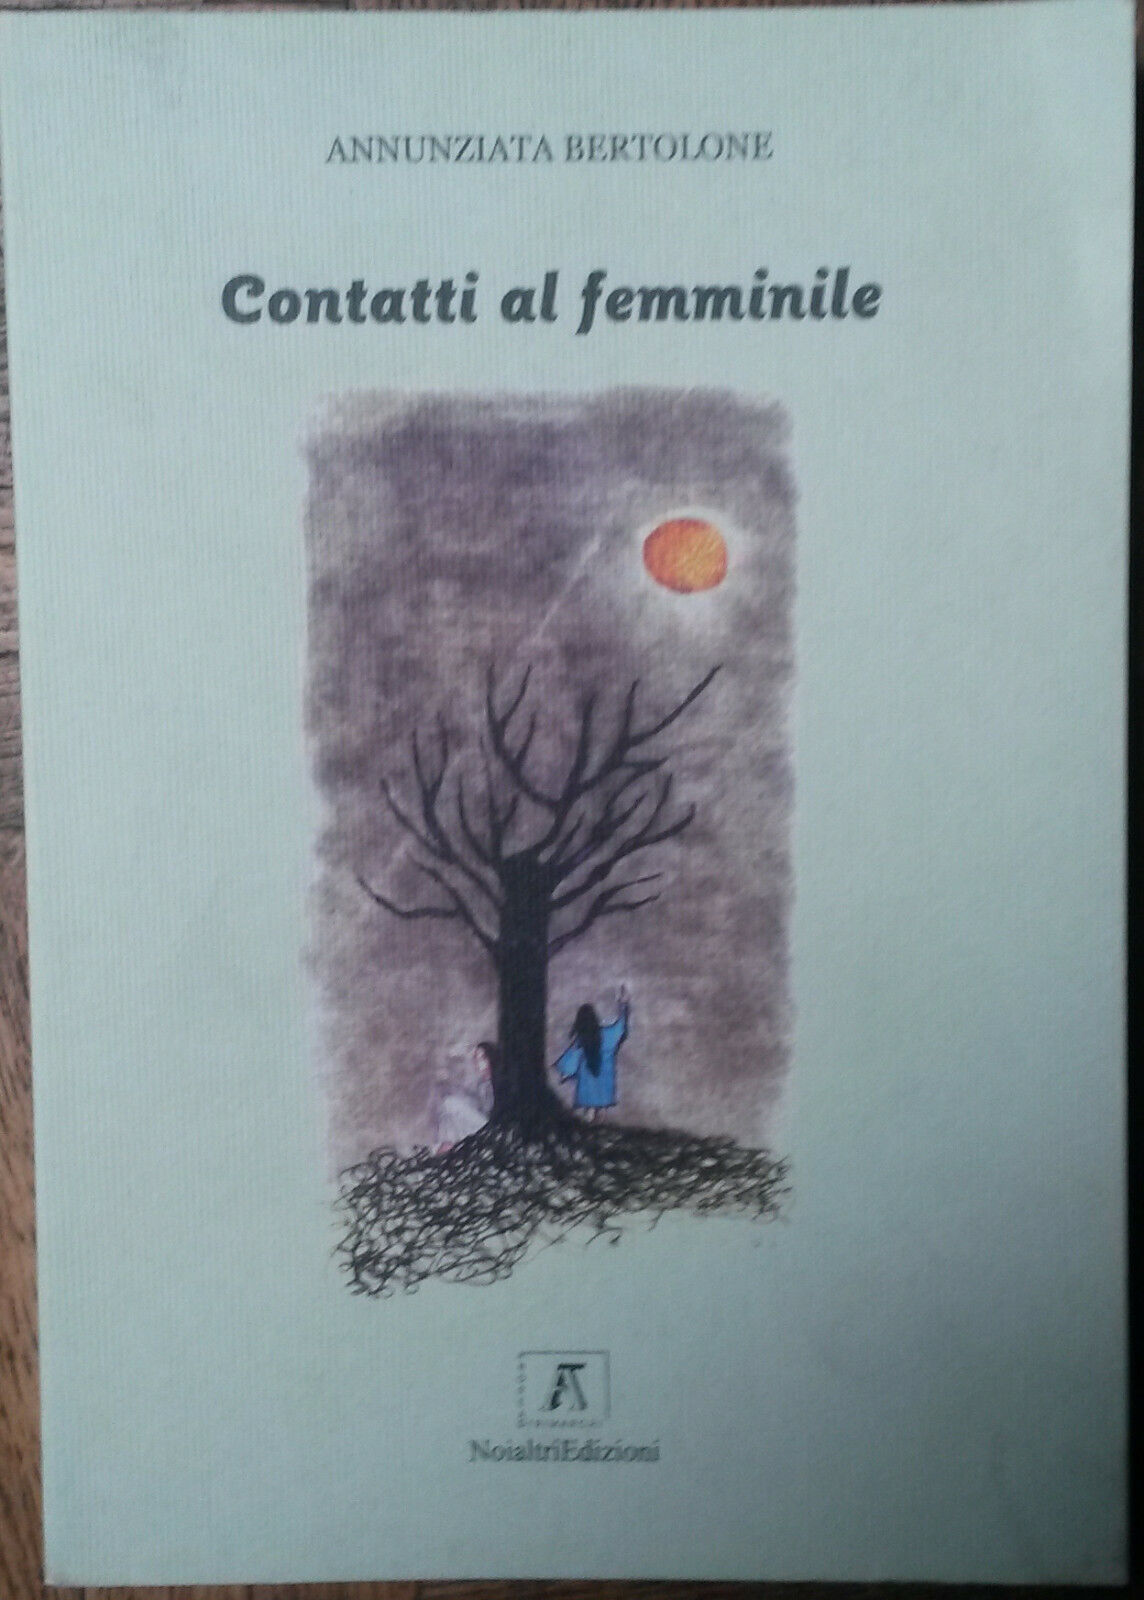 Contatti al femminile - Annunziata Bertolone - Noialtri Edizioni,2007 - R